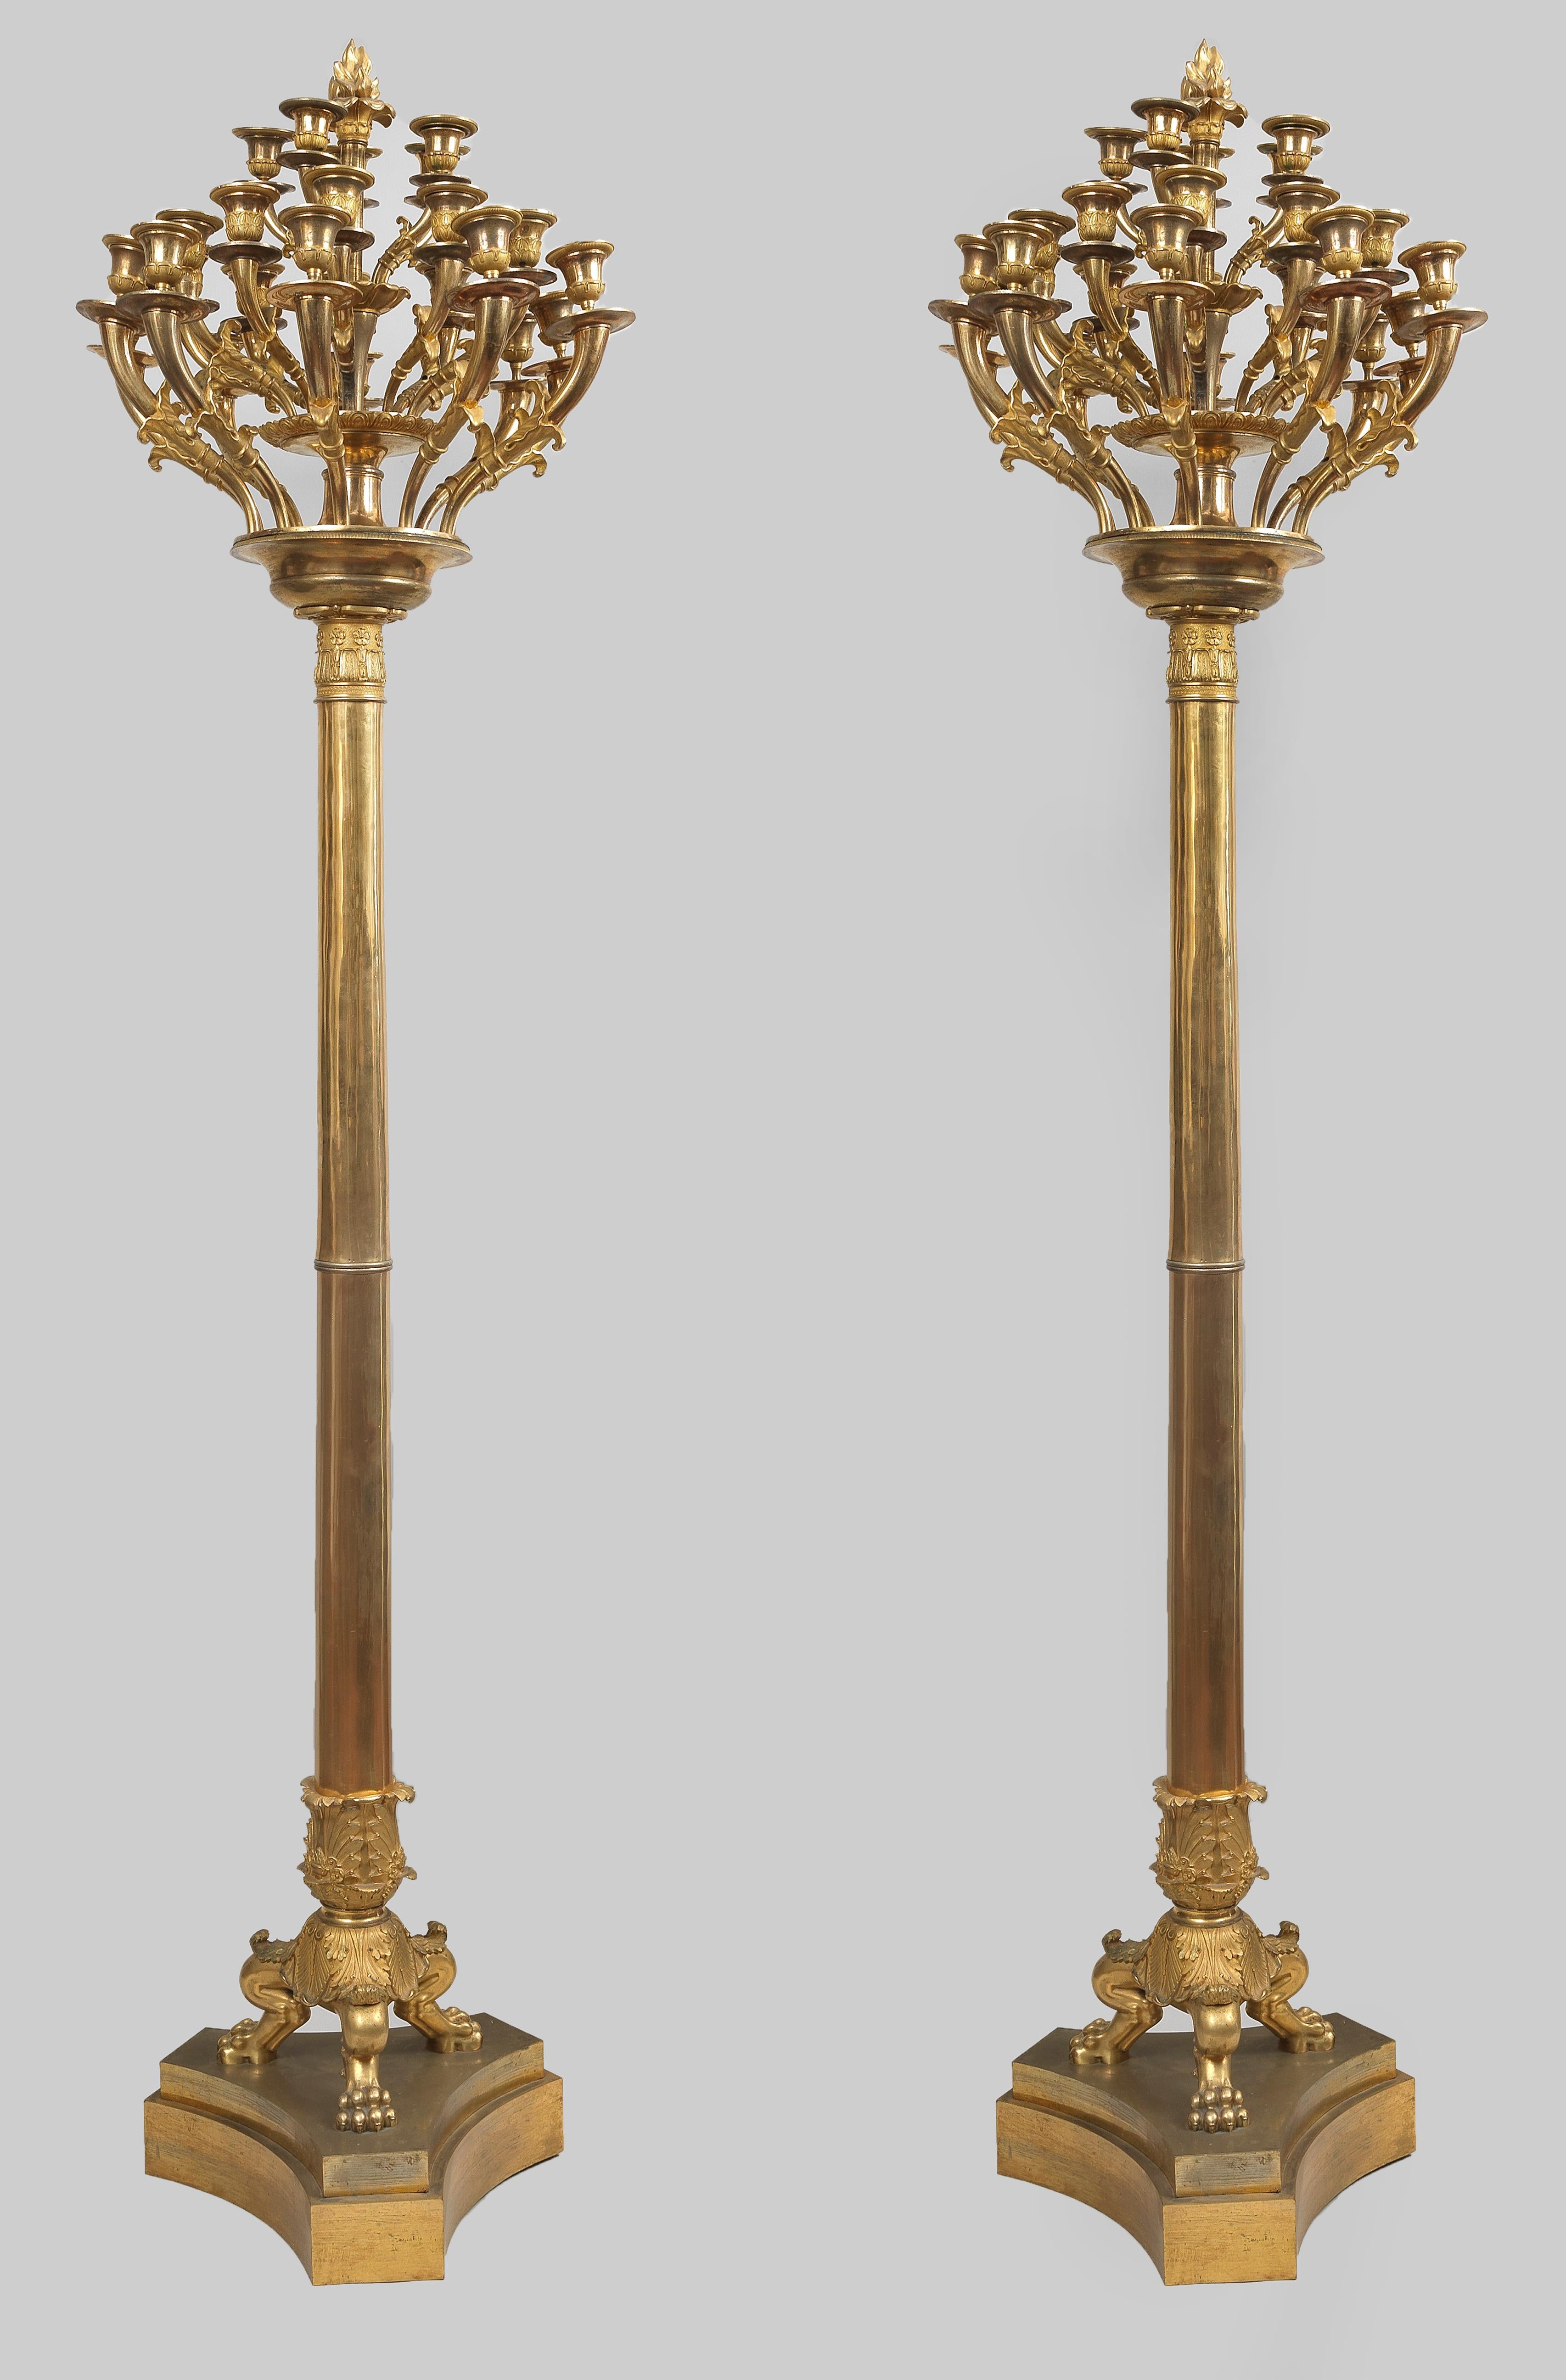 Beeindruckendes Paar italienischer Empire Flambeaux aus fein ziseliertem Ormolu, auf dreifachem Sockel, jeweils mit 25 verschnörkelten Kerzenarmen aus vergoldeter Bronze. Luigi Manfredini, dem berühmten, zu Beginn des 19. Jahrhunderts in Mailand